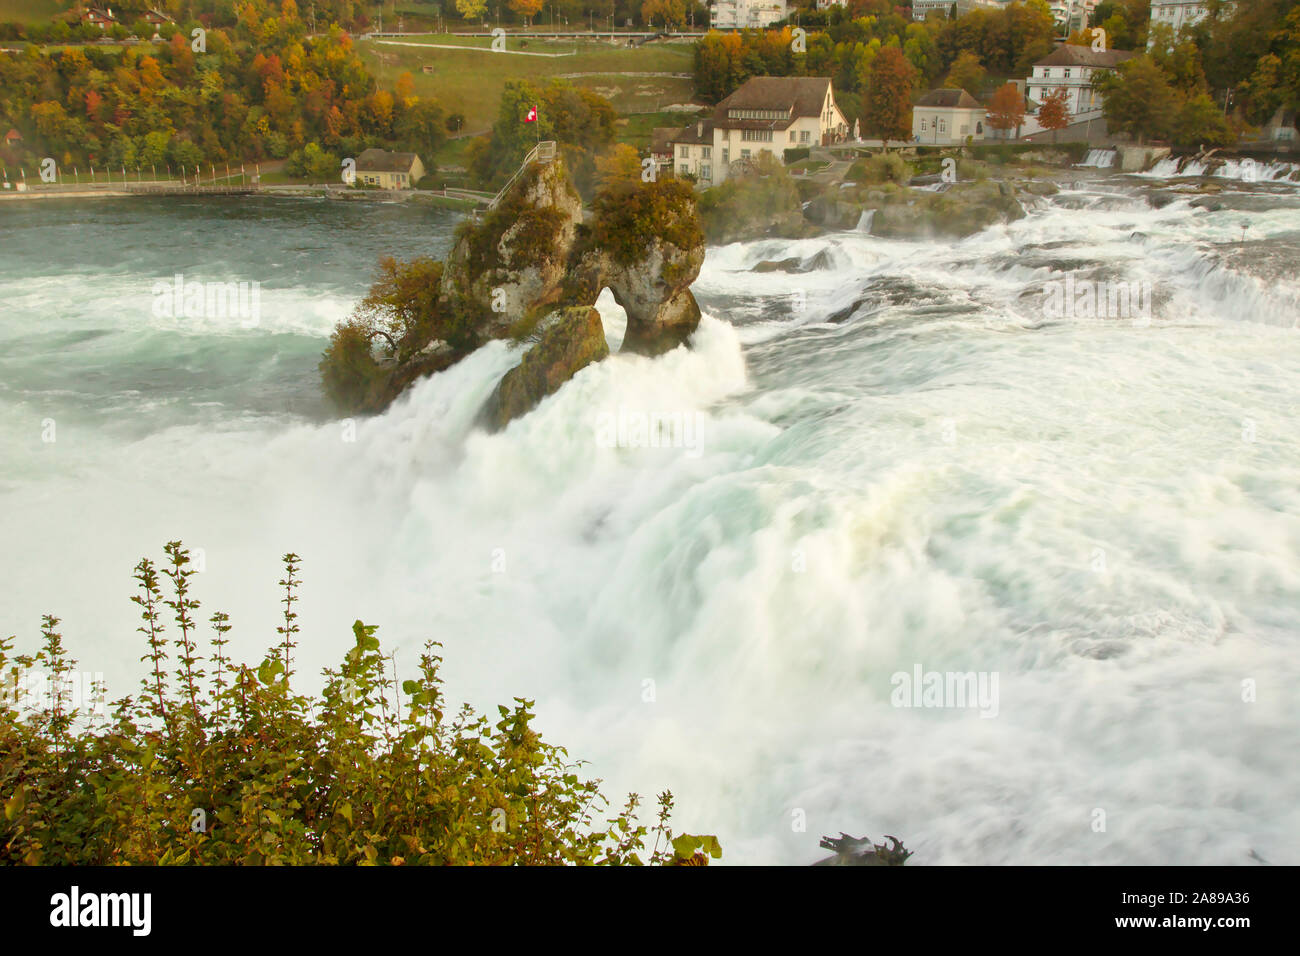 Rheinfall near Schaffhausen, Switzerland Stock Photo